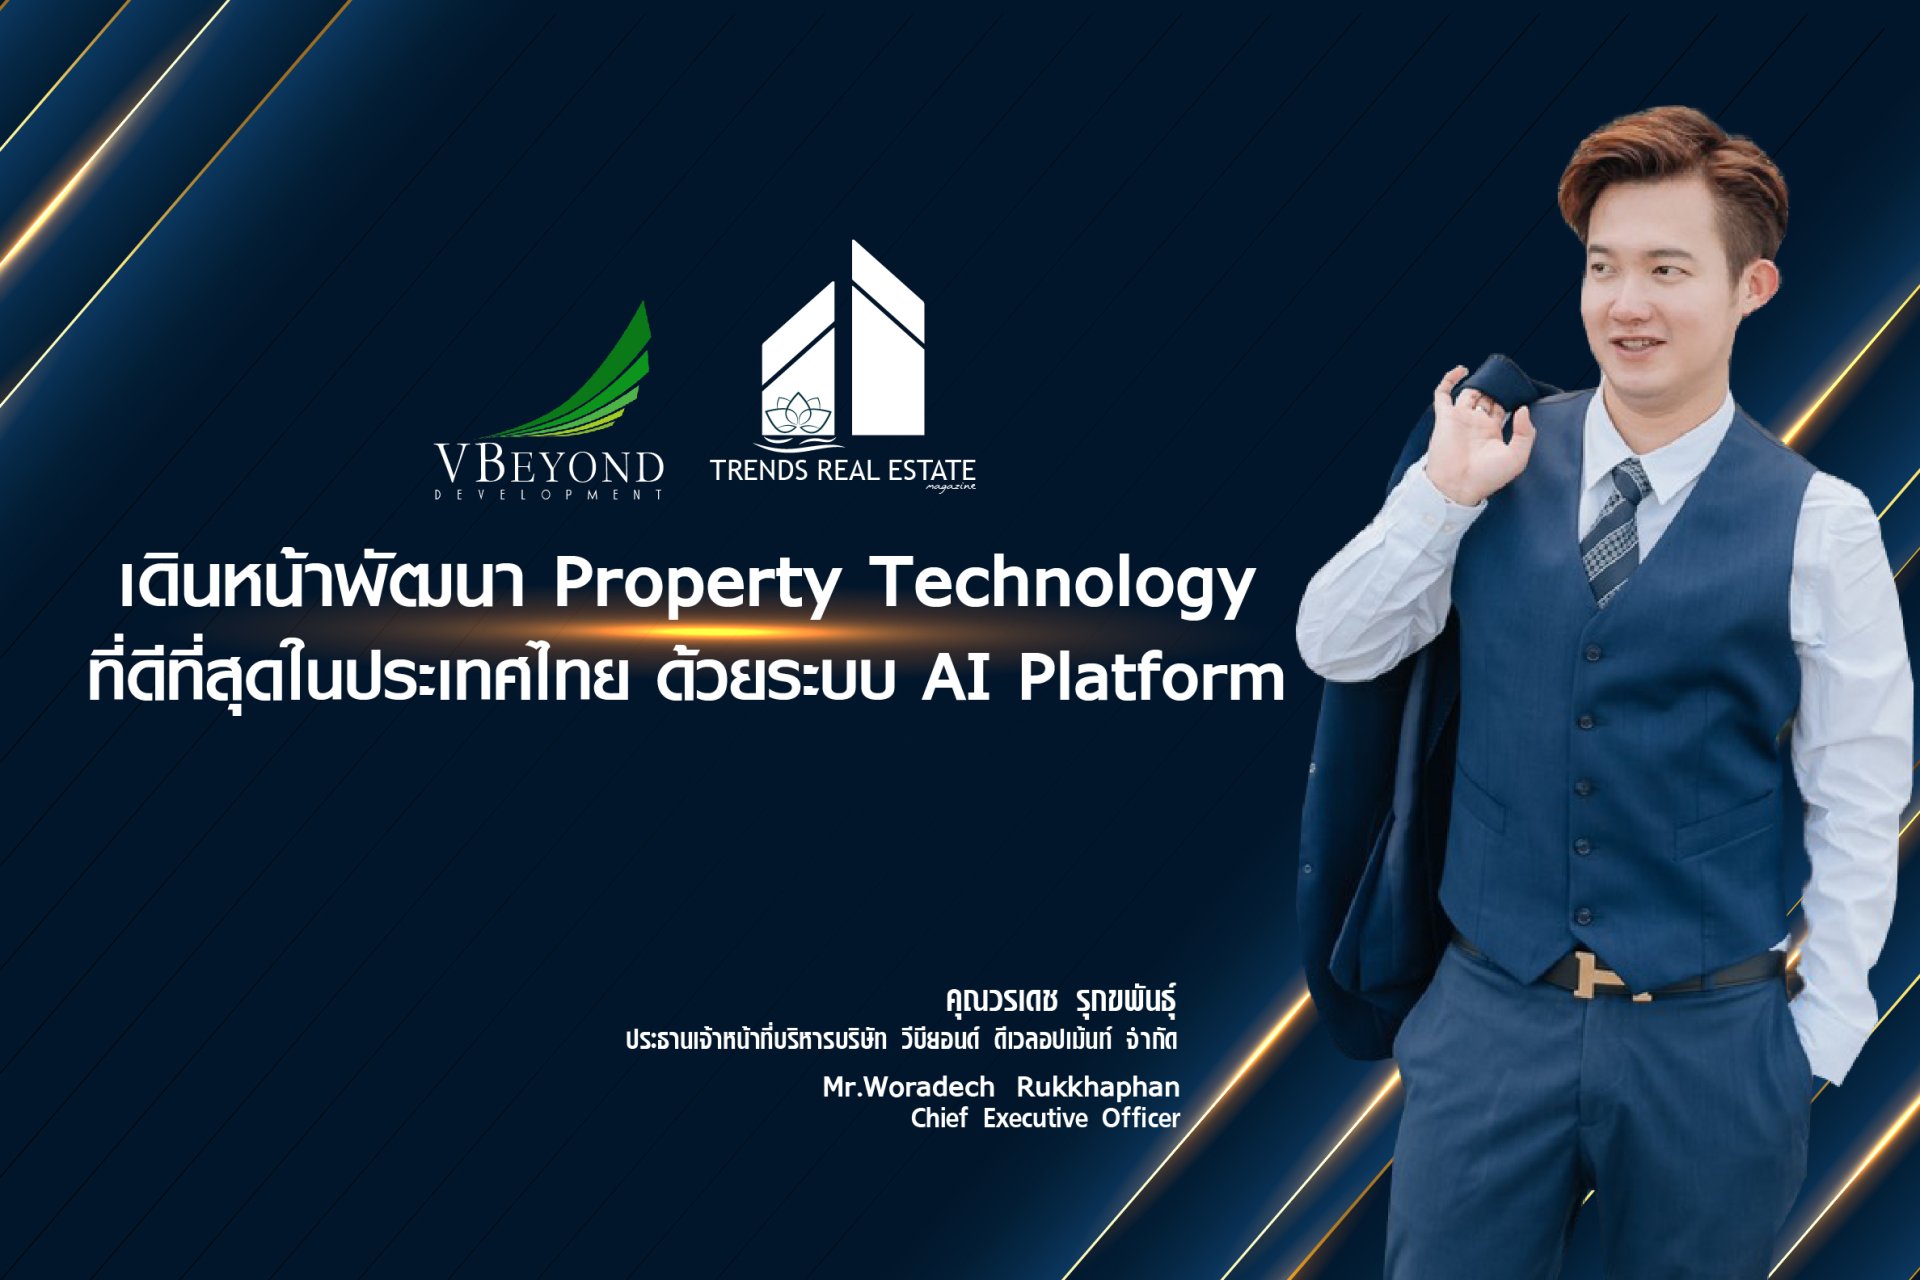 เดินหน้าพัฒนา Property Technology ที่ดีที่สุดในประเทศไทย ด้วยระบบ AI Platform